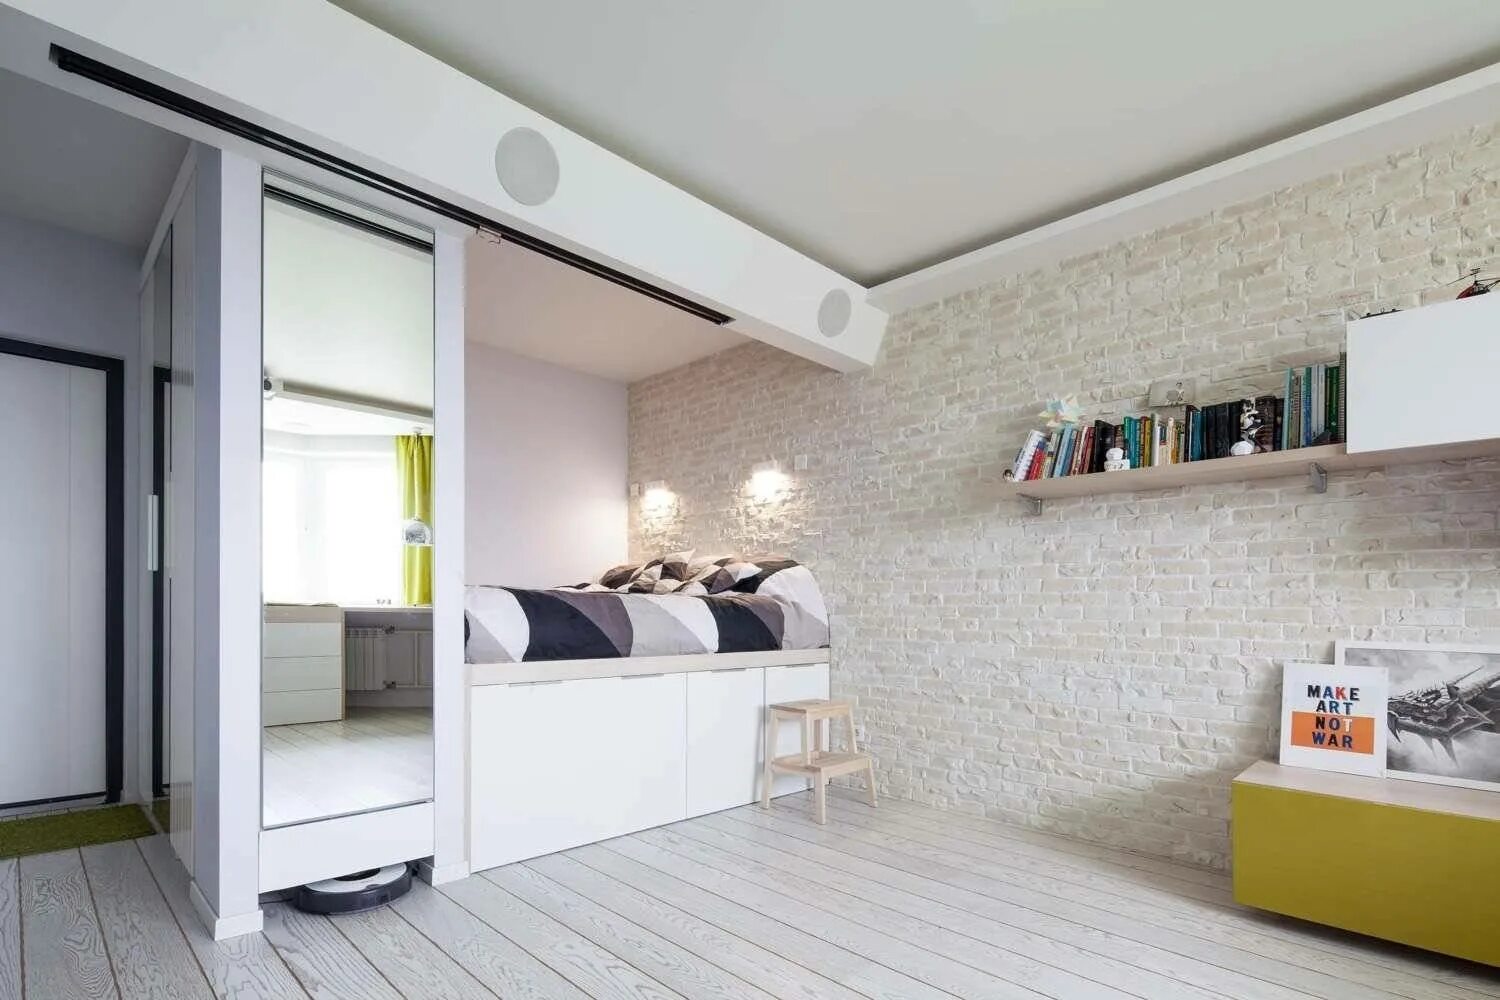 Дизайн квартиры 42. Кровать на подиуме в интерьере. Планировка комнаты с нишей. Кровать подиум в нише. Спальня на подиуме в однокомнатной квартире.